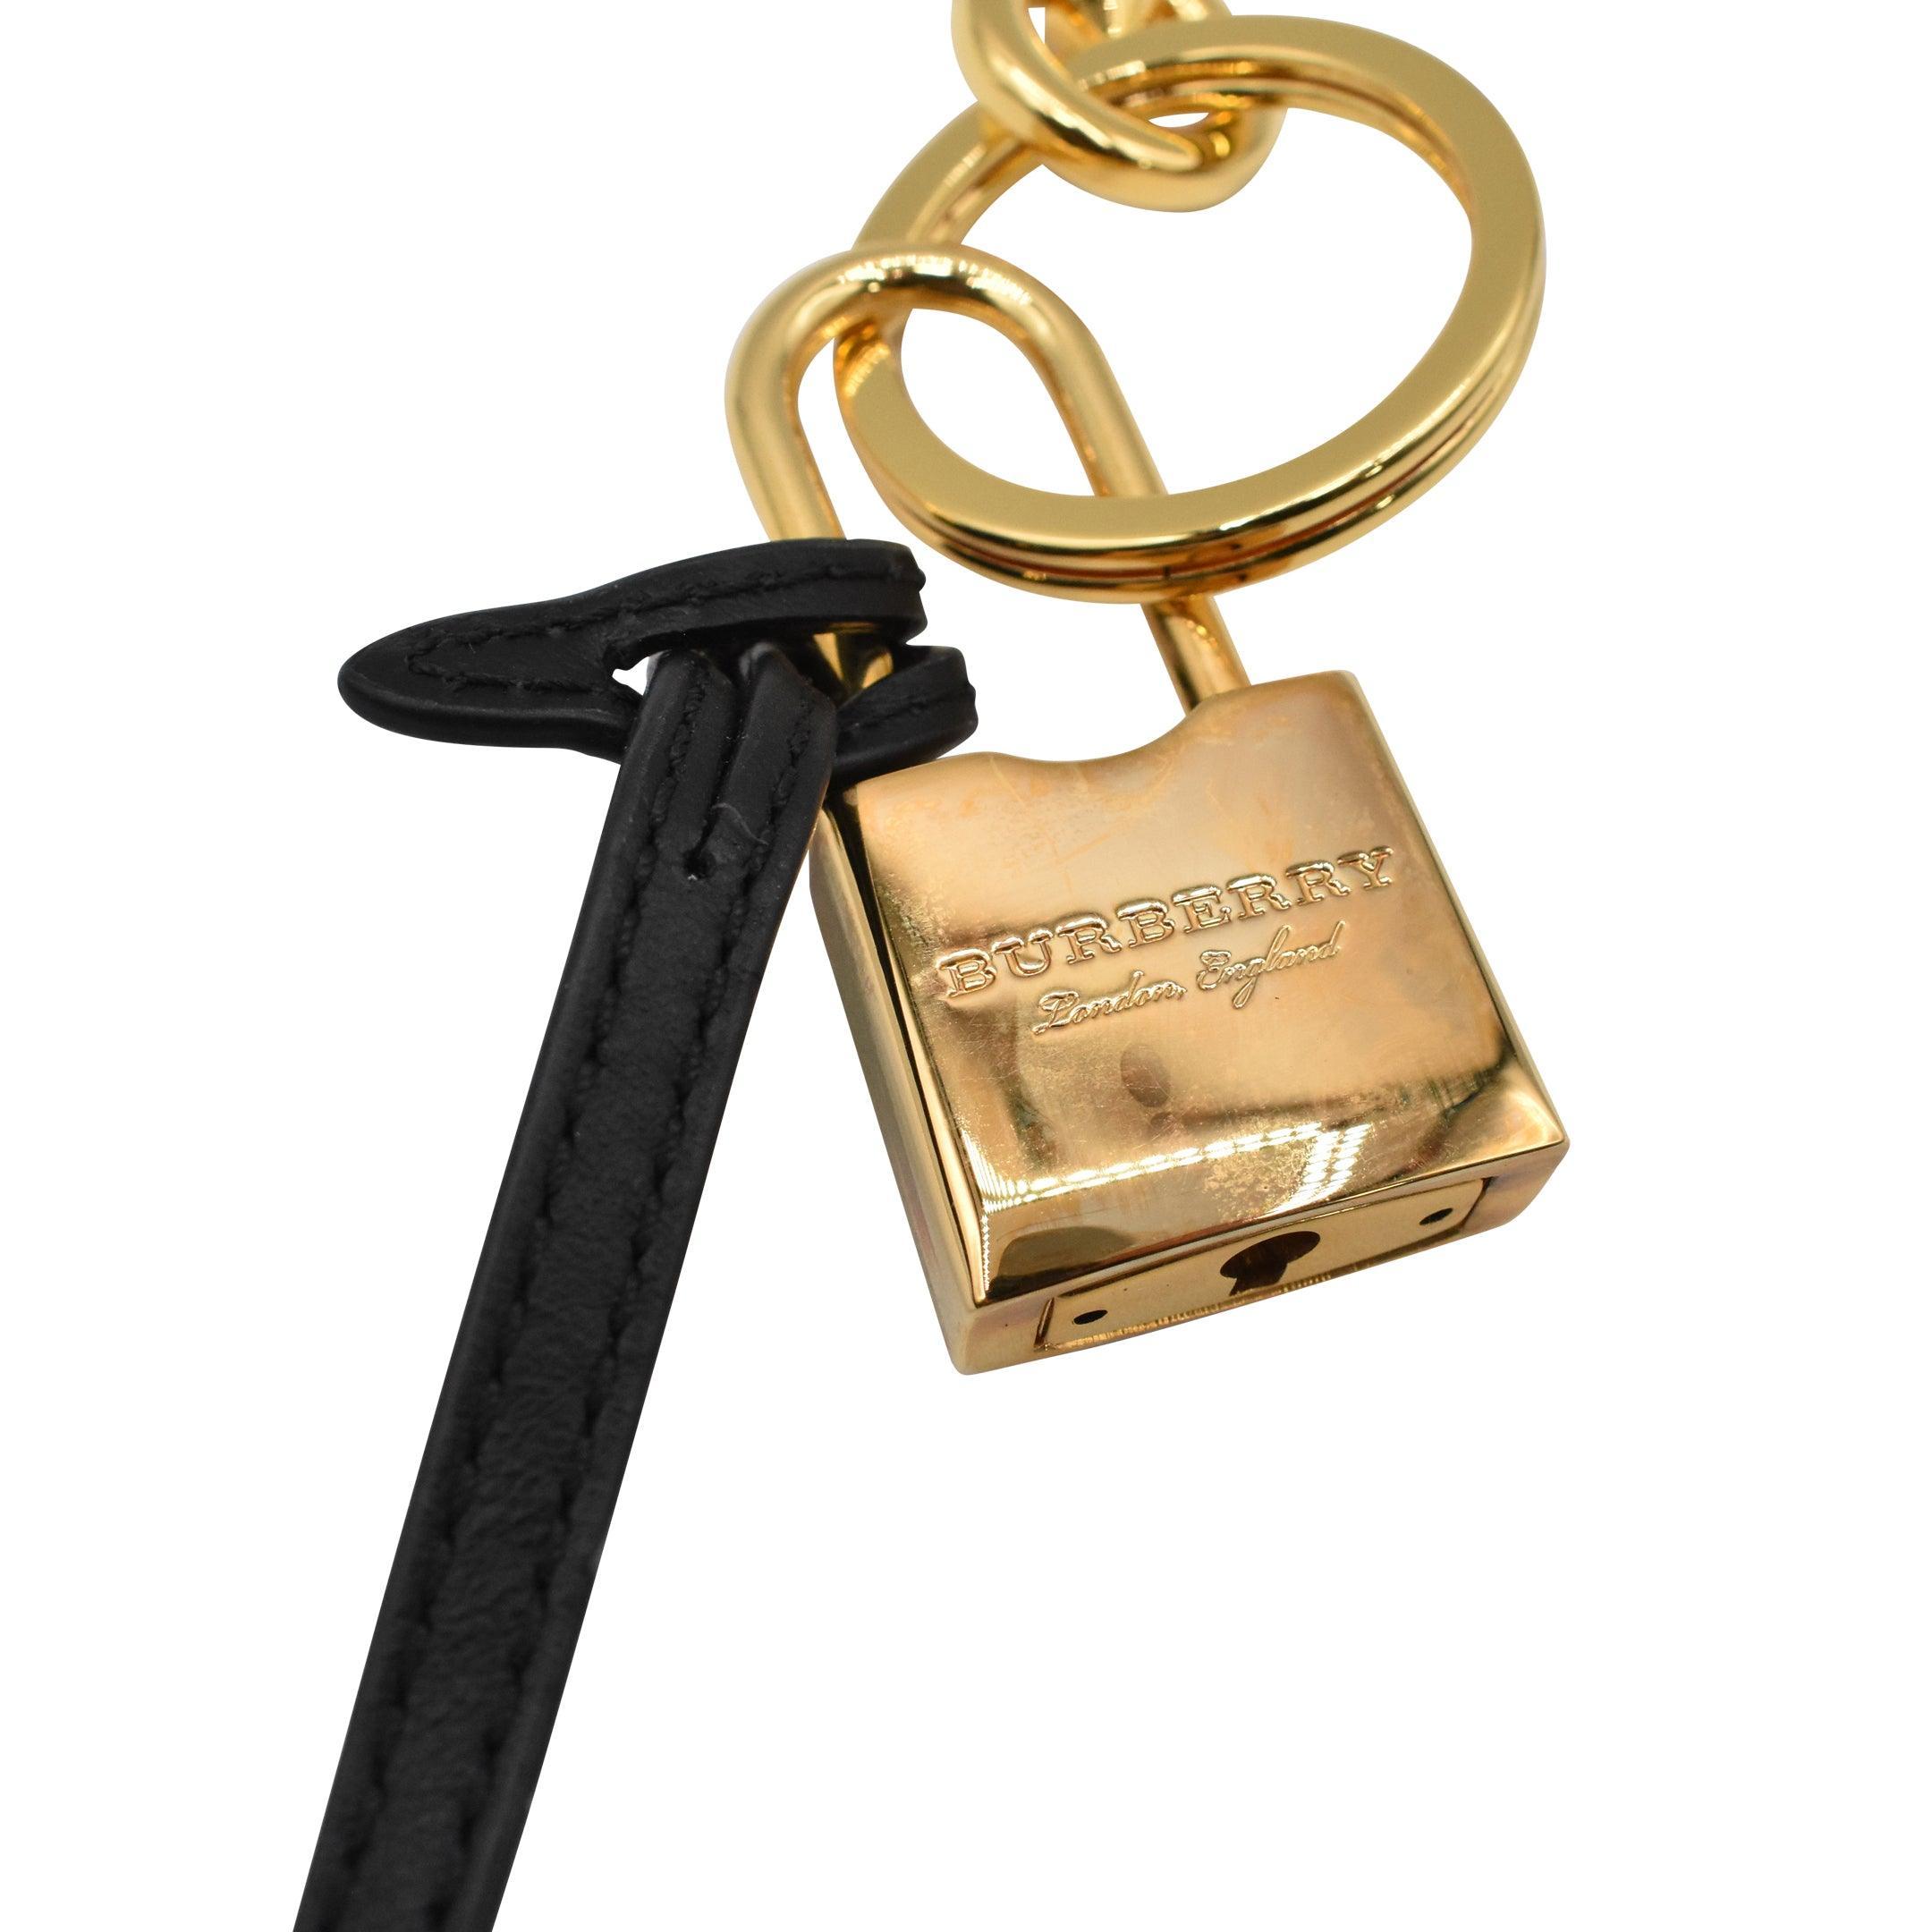 Burberry Owl Lock Keychain - Fashionably Yours